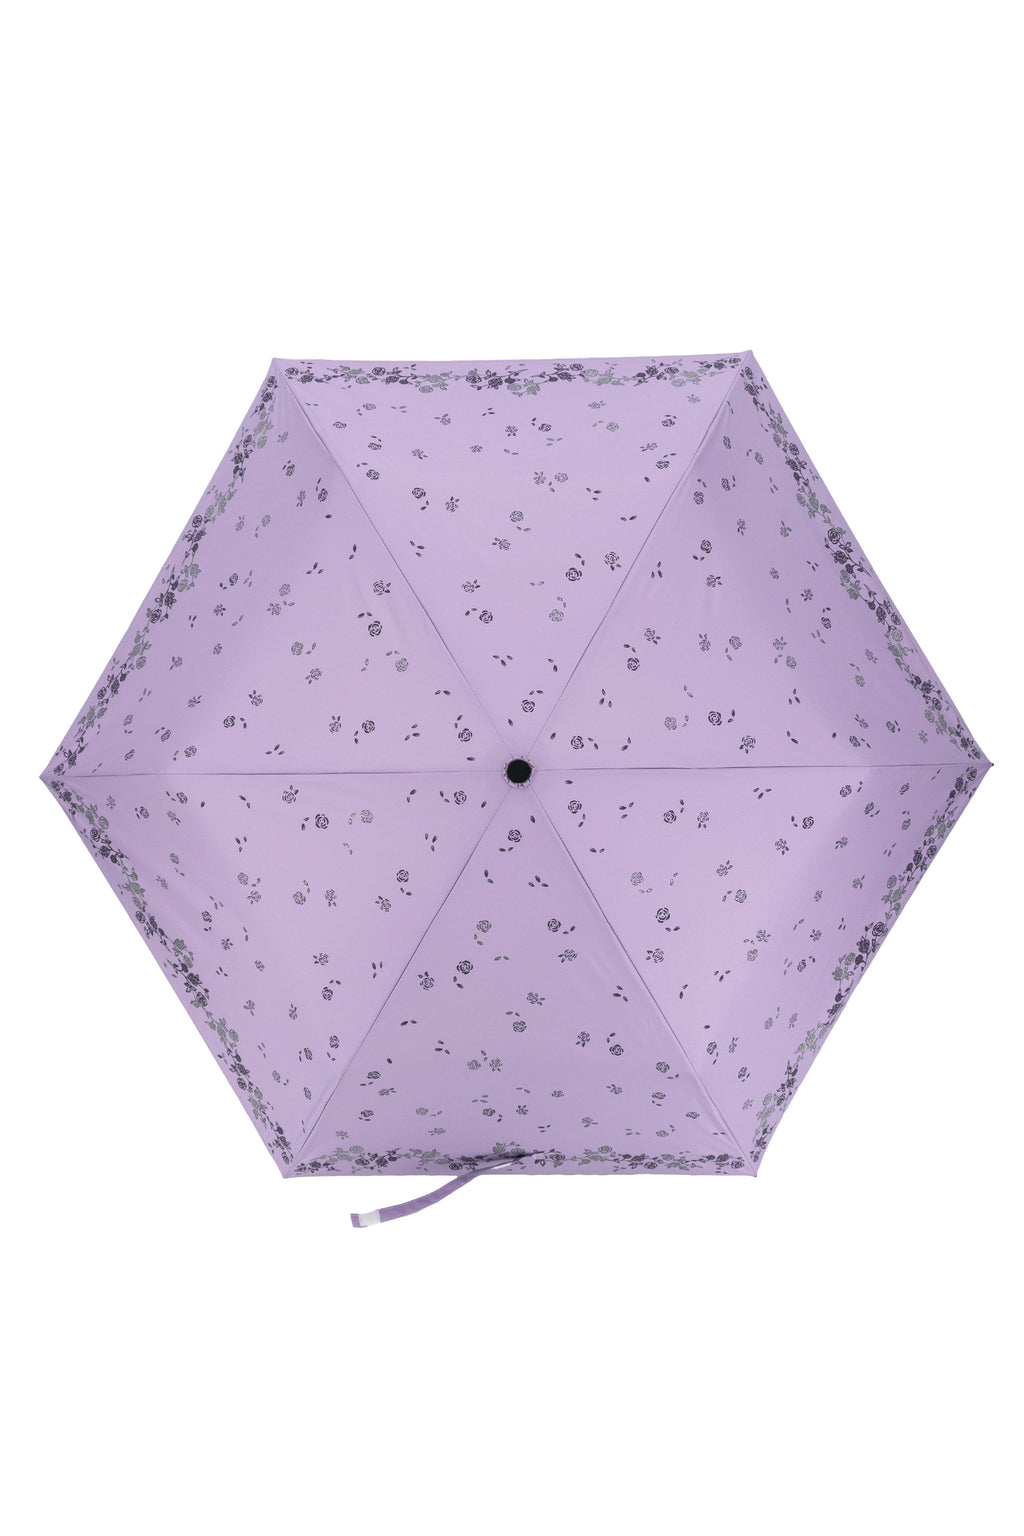 閃粉玫瑰雨傘